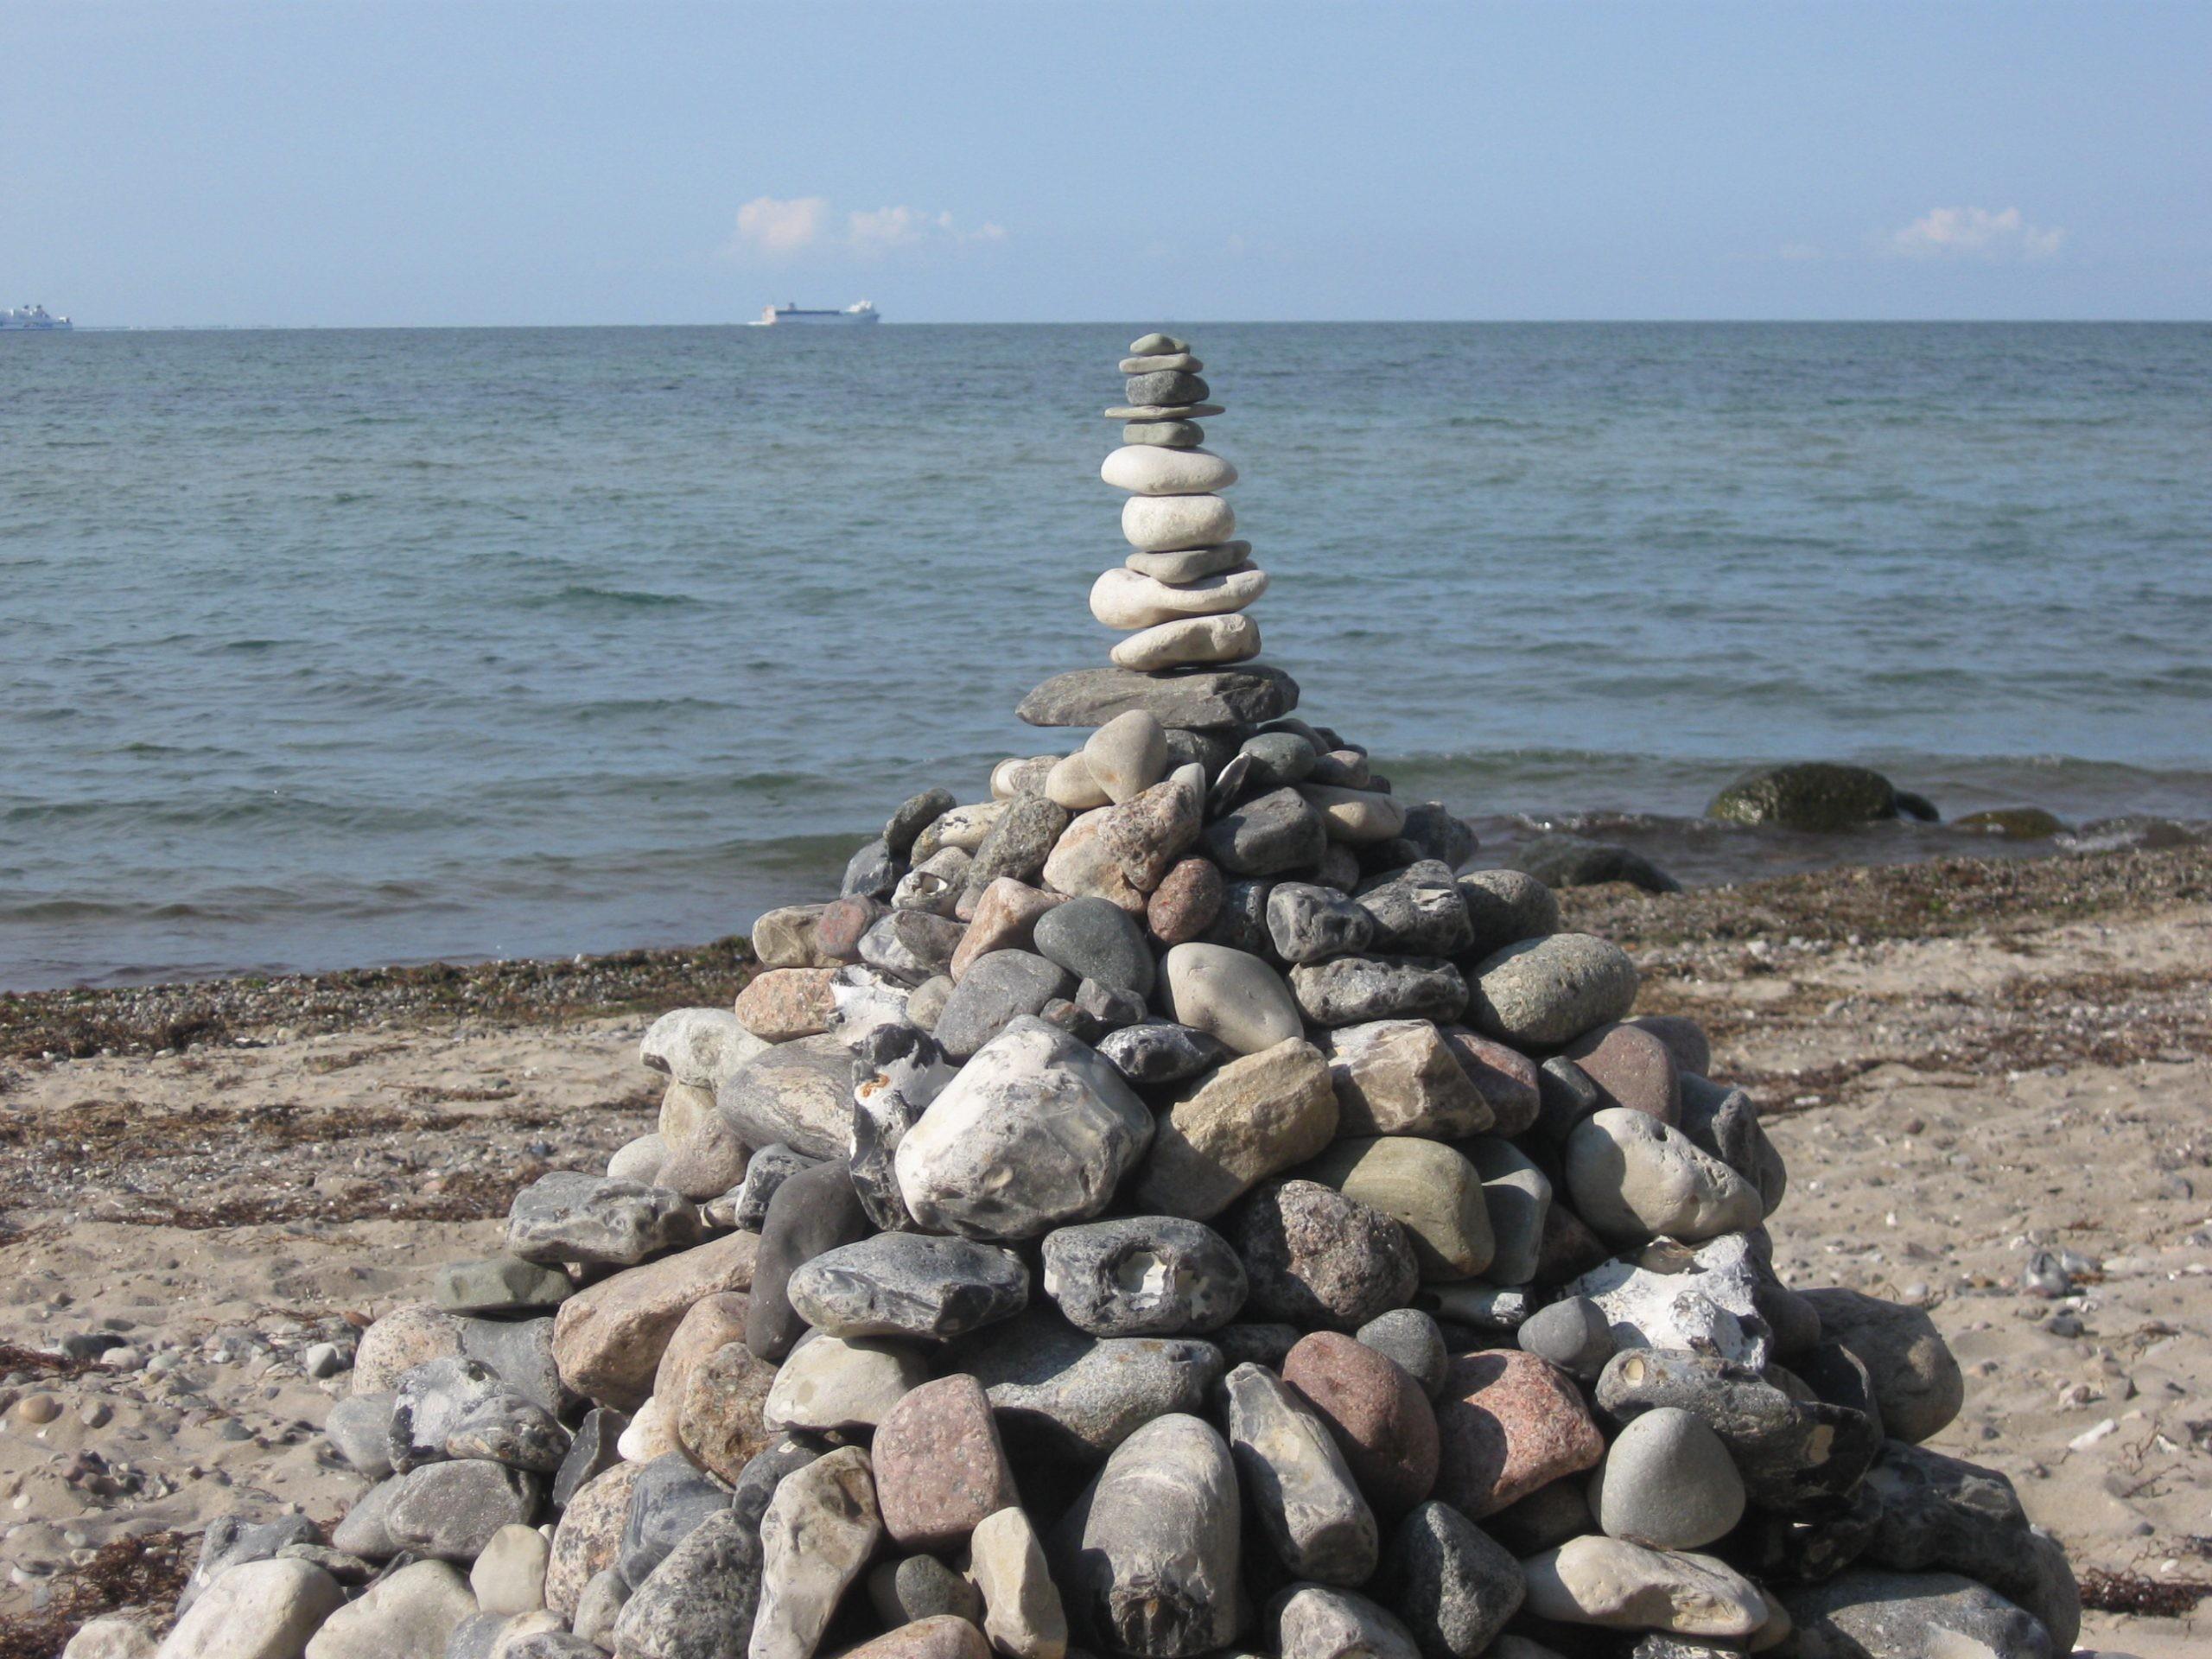 Steine sind an der Ostsee zu einer Pyramide getürmt